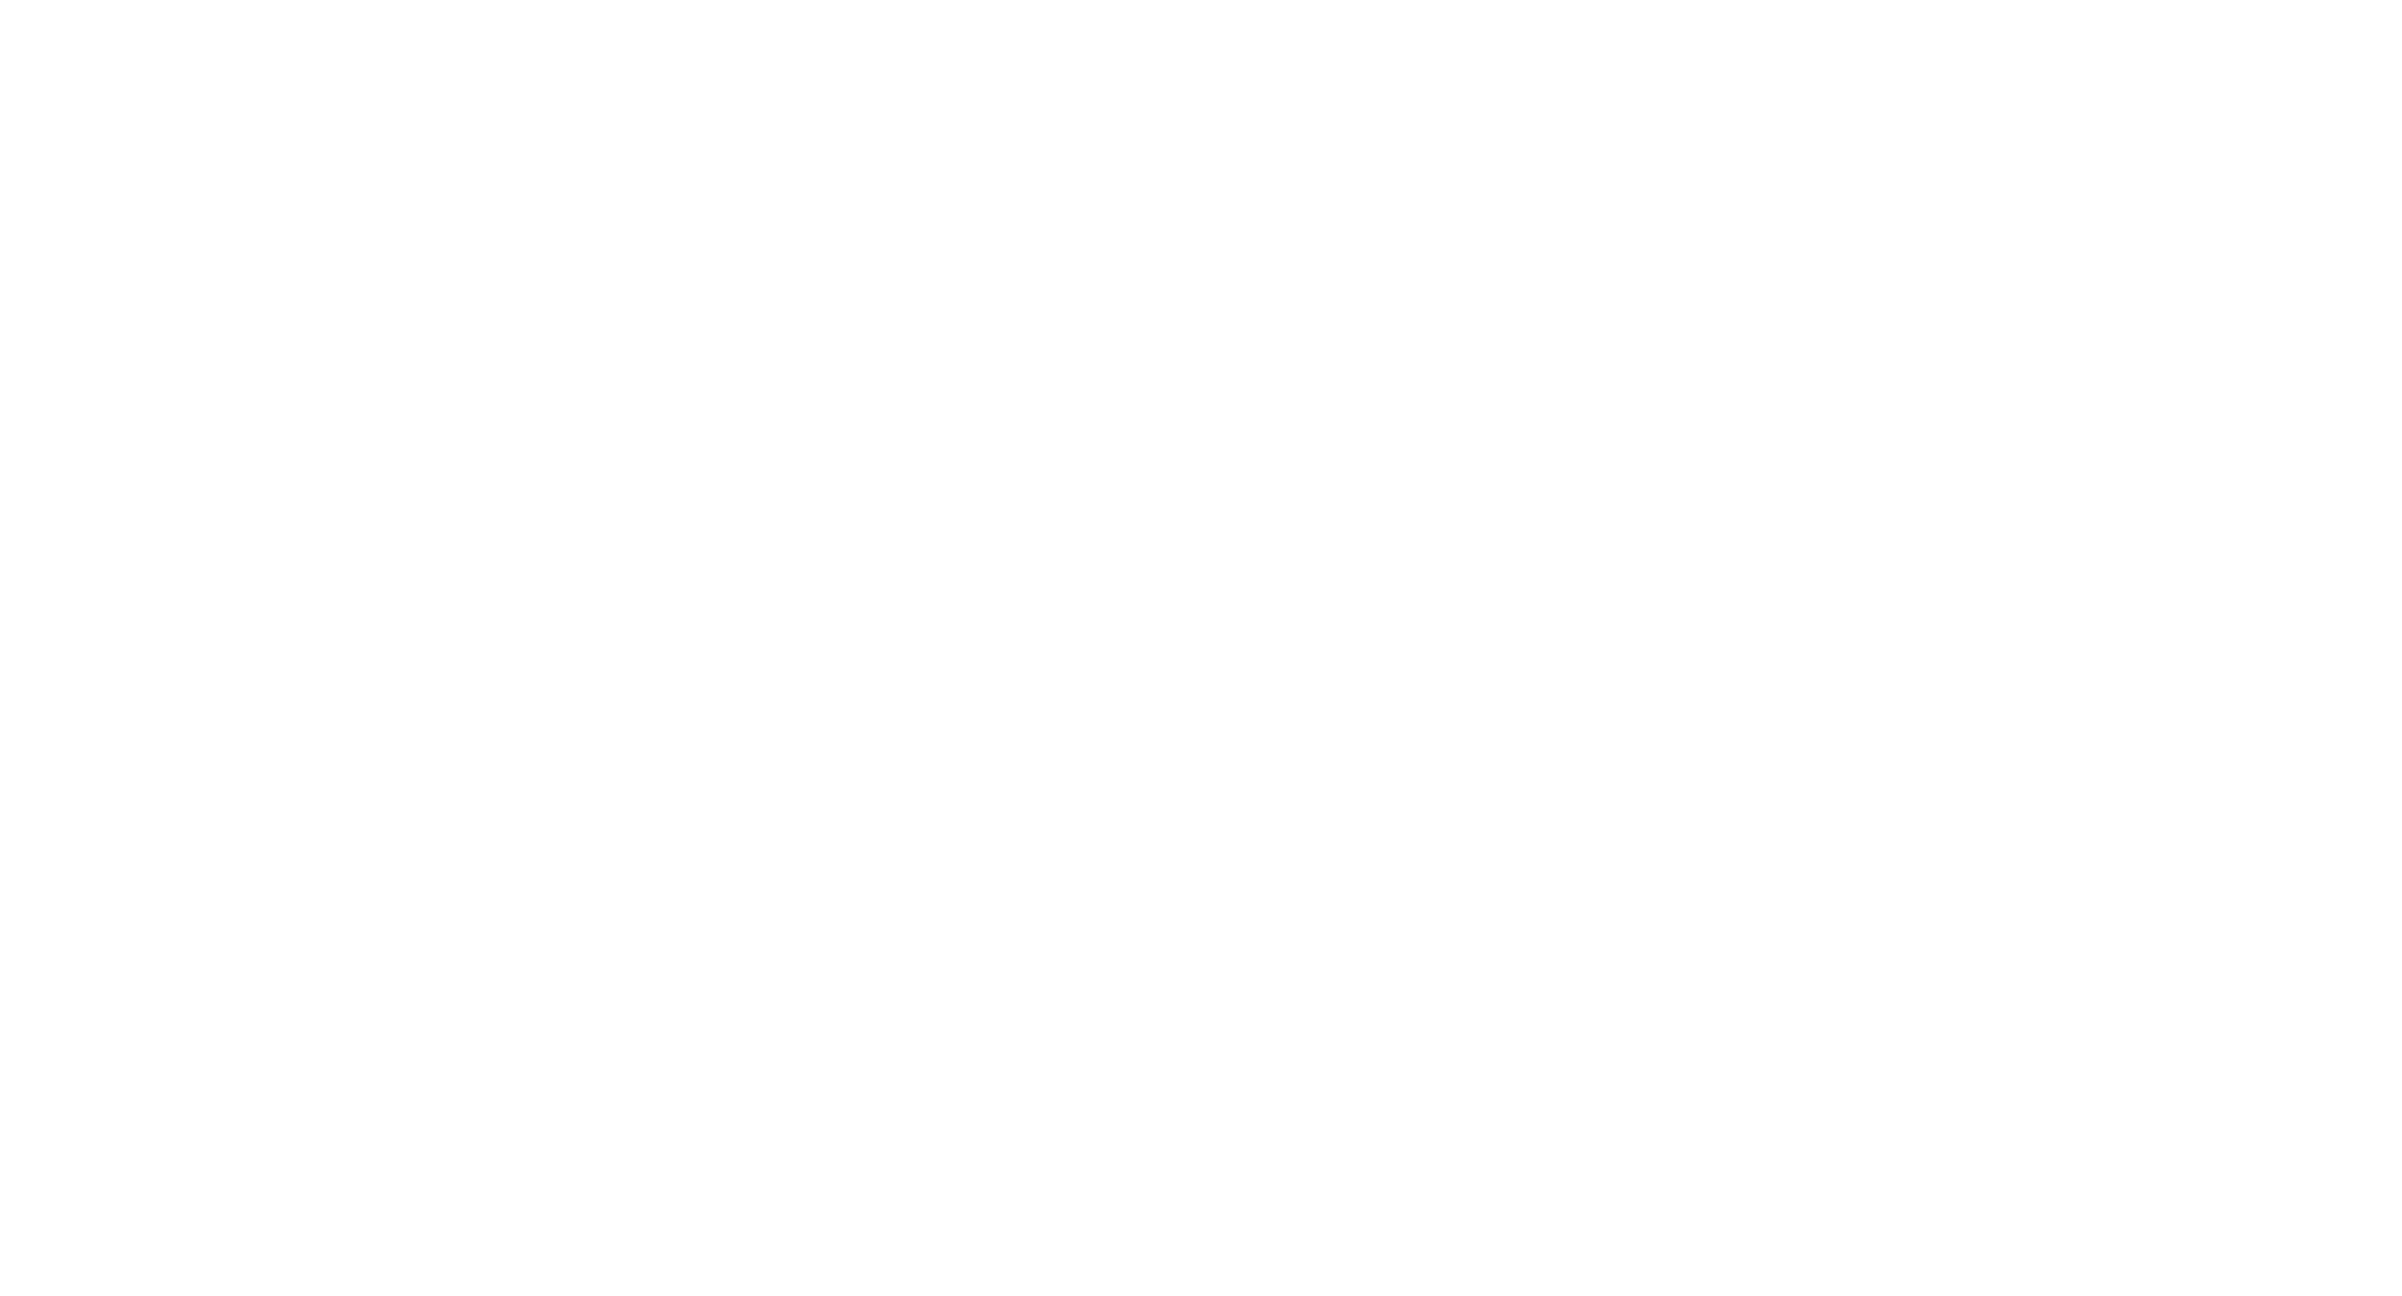 Geordie Shore logo